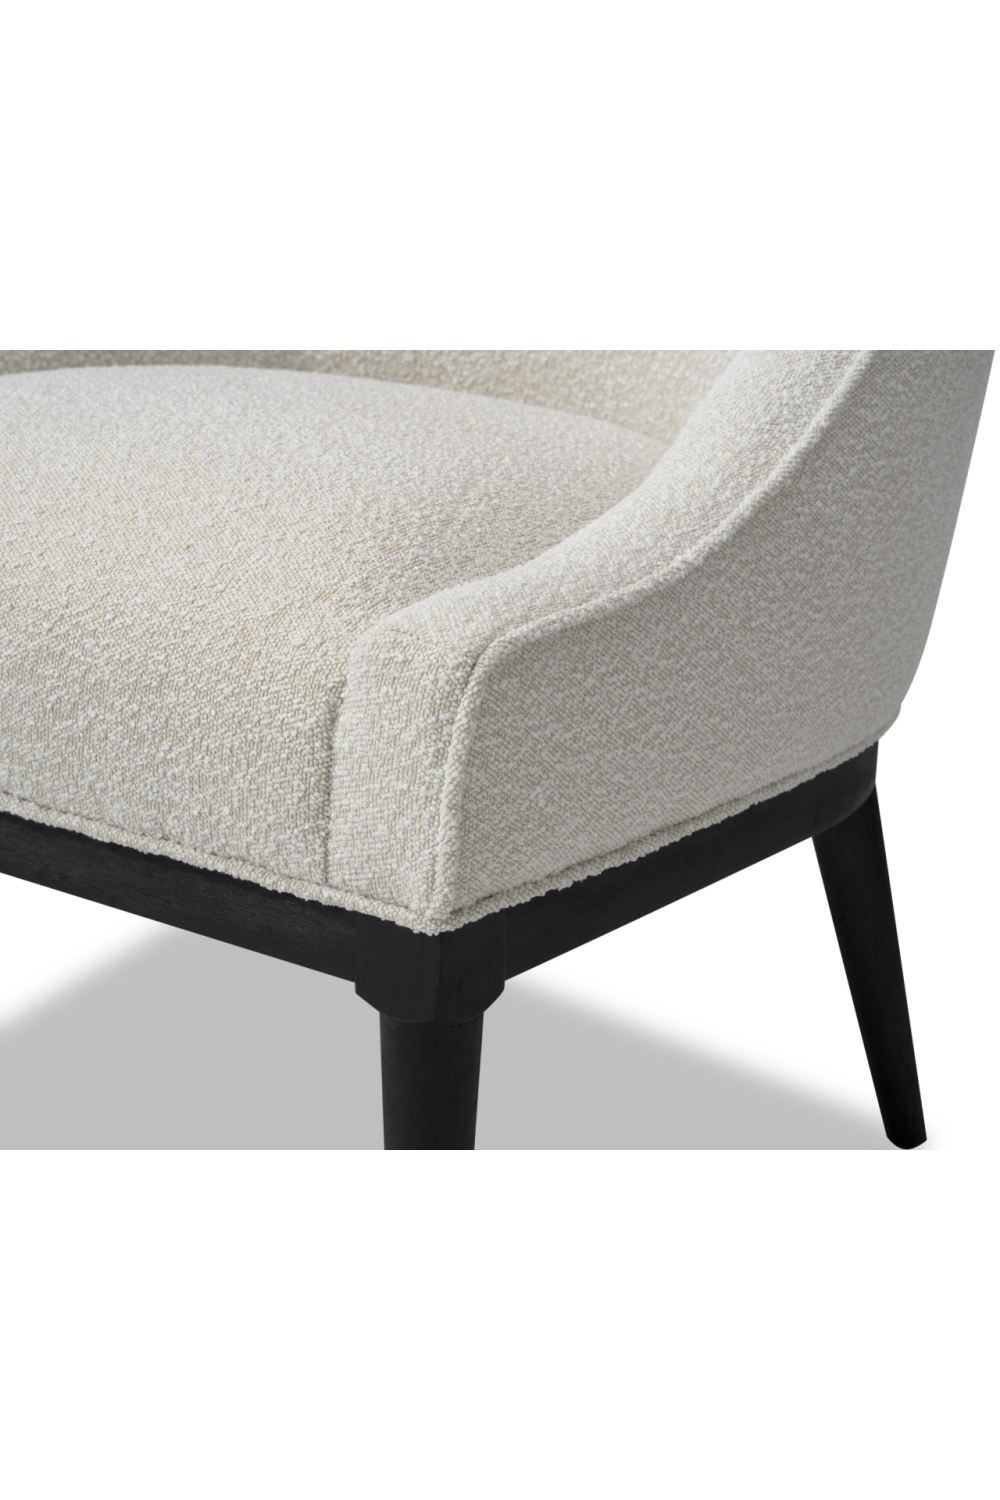 Modern Sloped Ocassional Chair | Liang & Eimil Vegas | Oroa.com